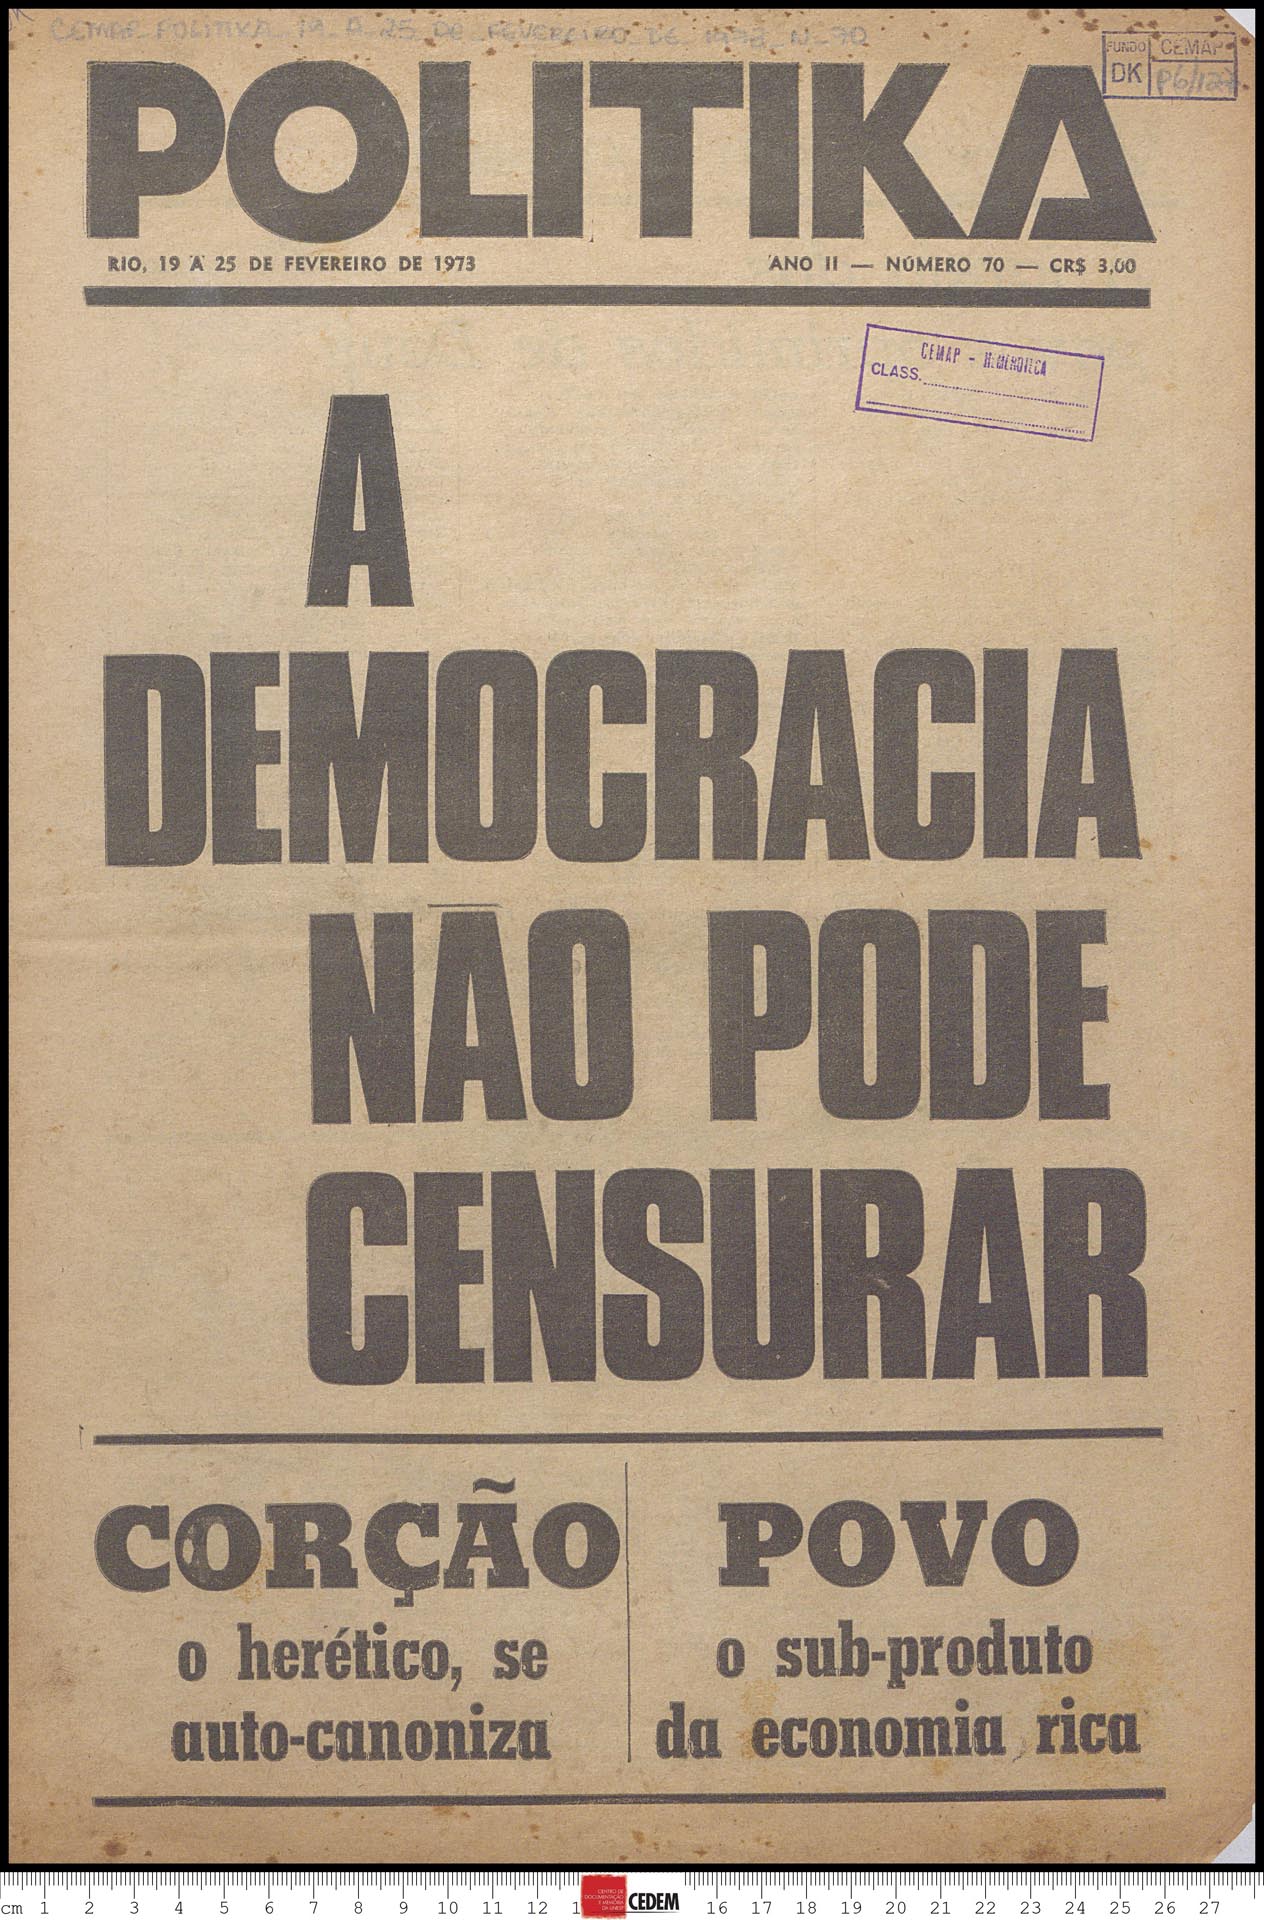 Politika - 70 - 15 a 25 de fev. 1973